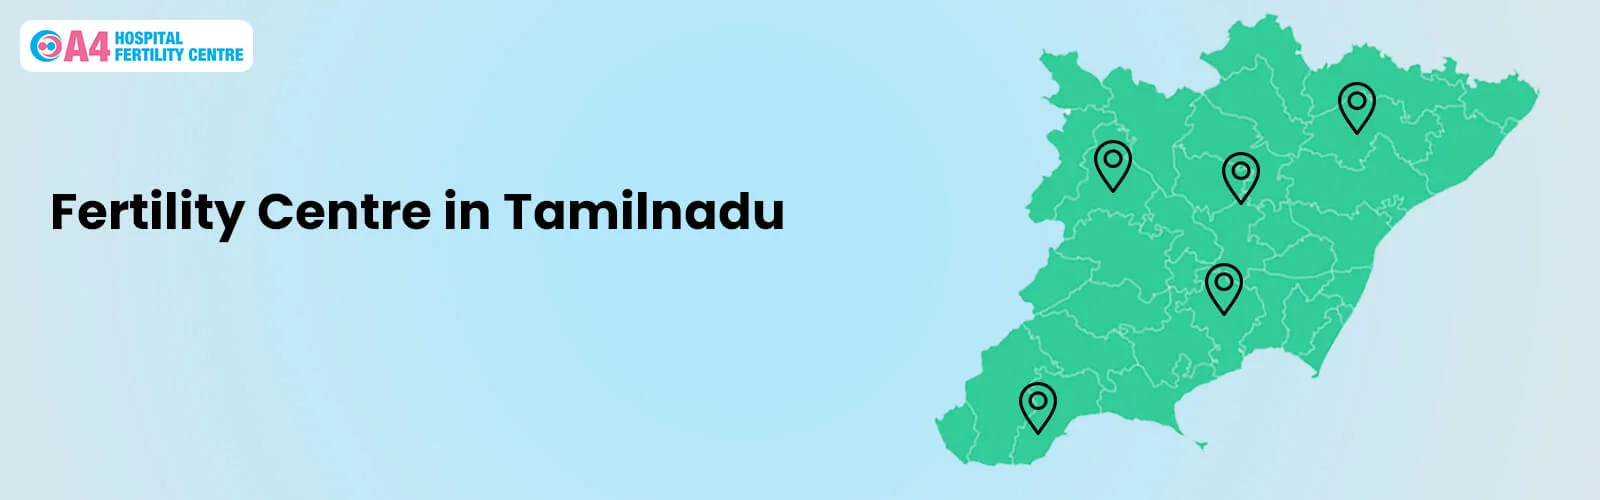 fertility-centre-in-tamilnadu